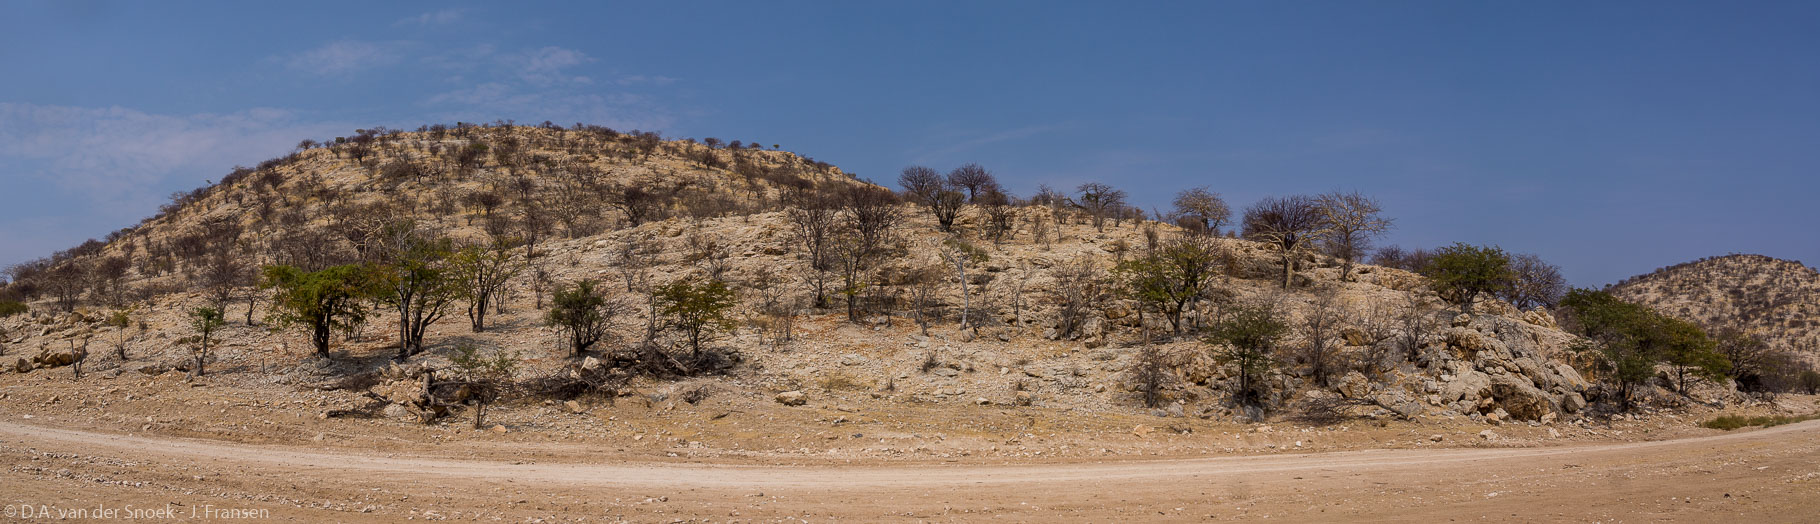 Namibië-2203-2205_v1.jpg